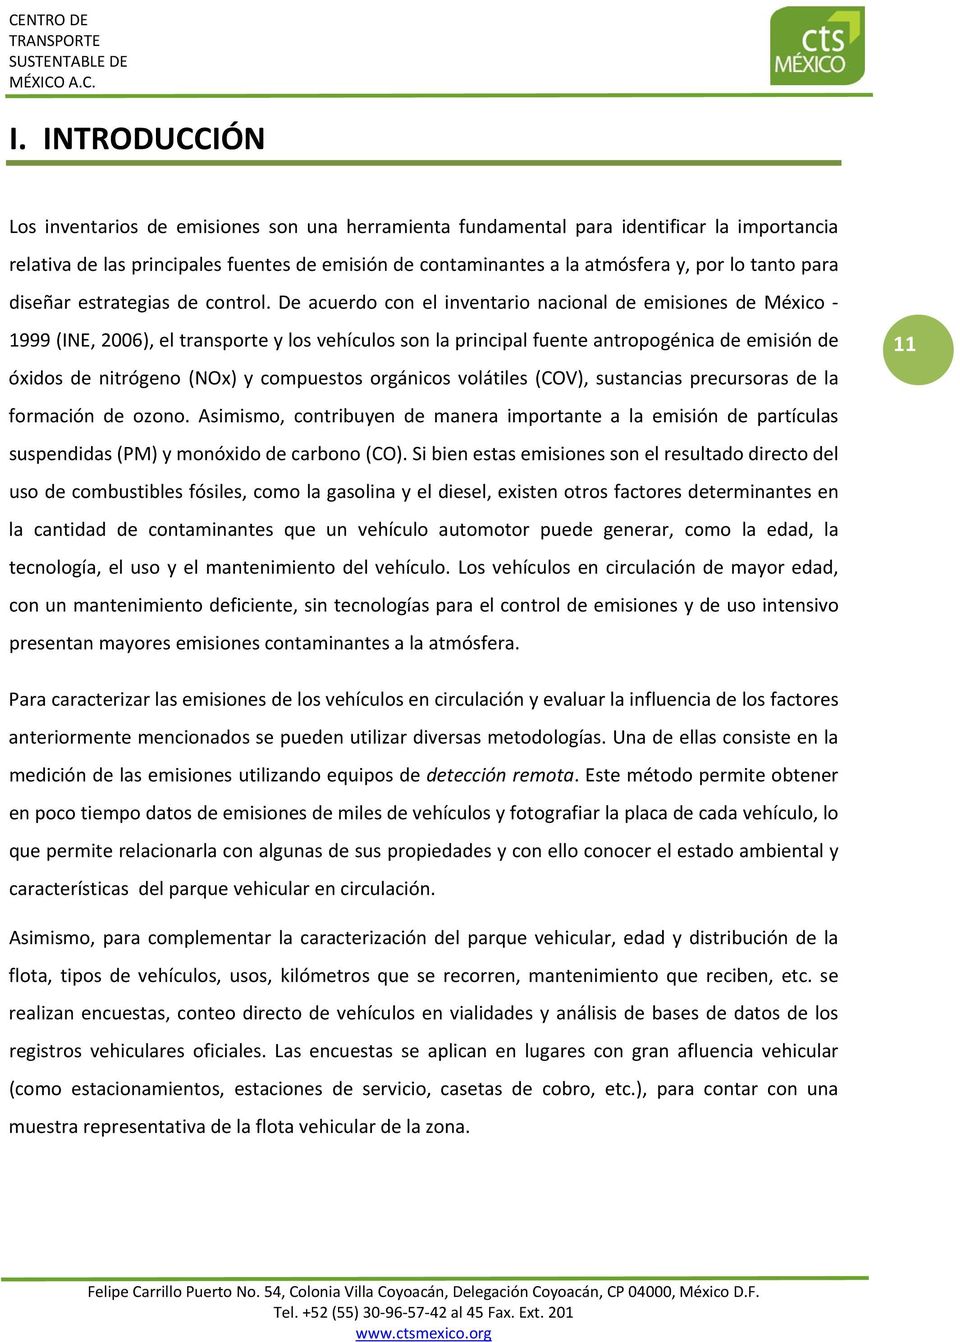 De acuerdo con el inventario nacional de emisiones de México 1999 (INE, 2006), el transporte y los vehículos son la principal fuente antropogénica de emisión de óxidos de nitrógeno (NOx) y compuestos